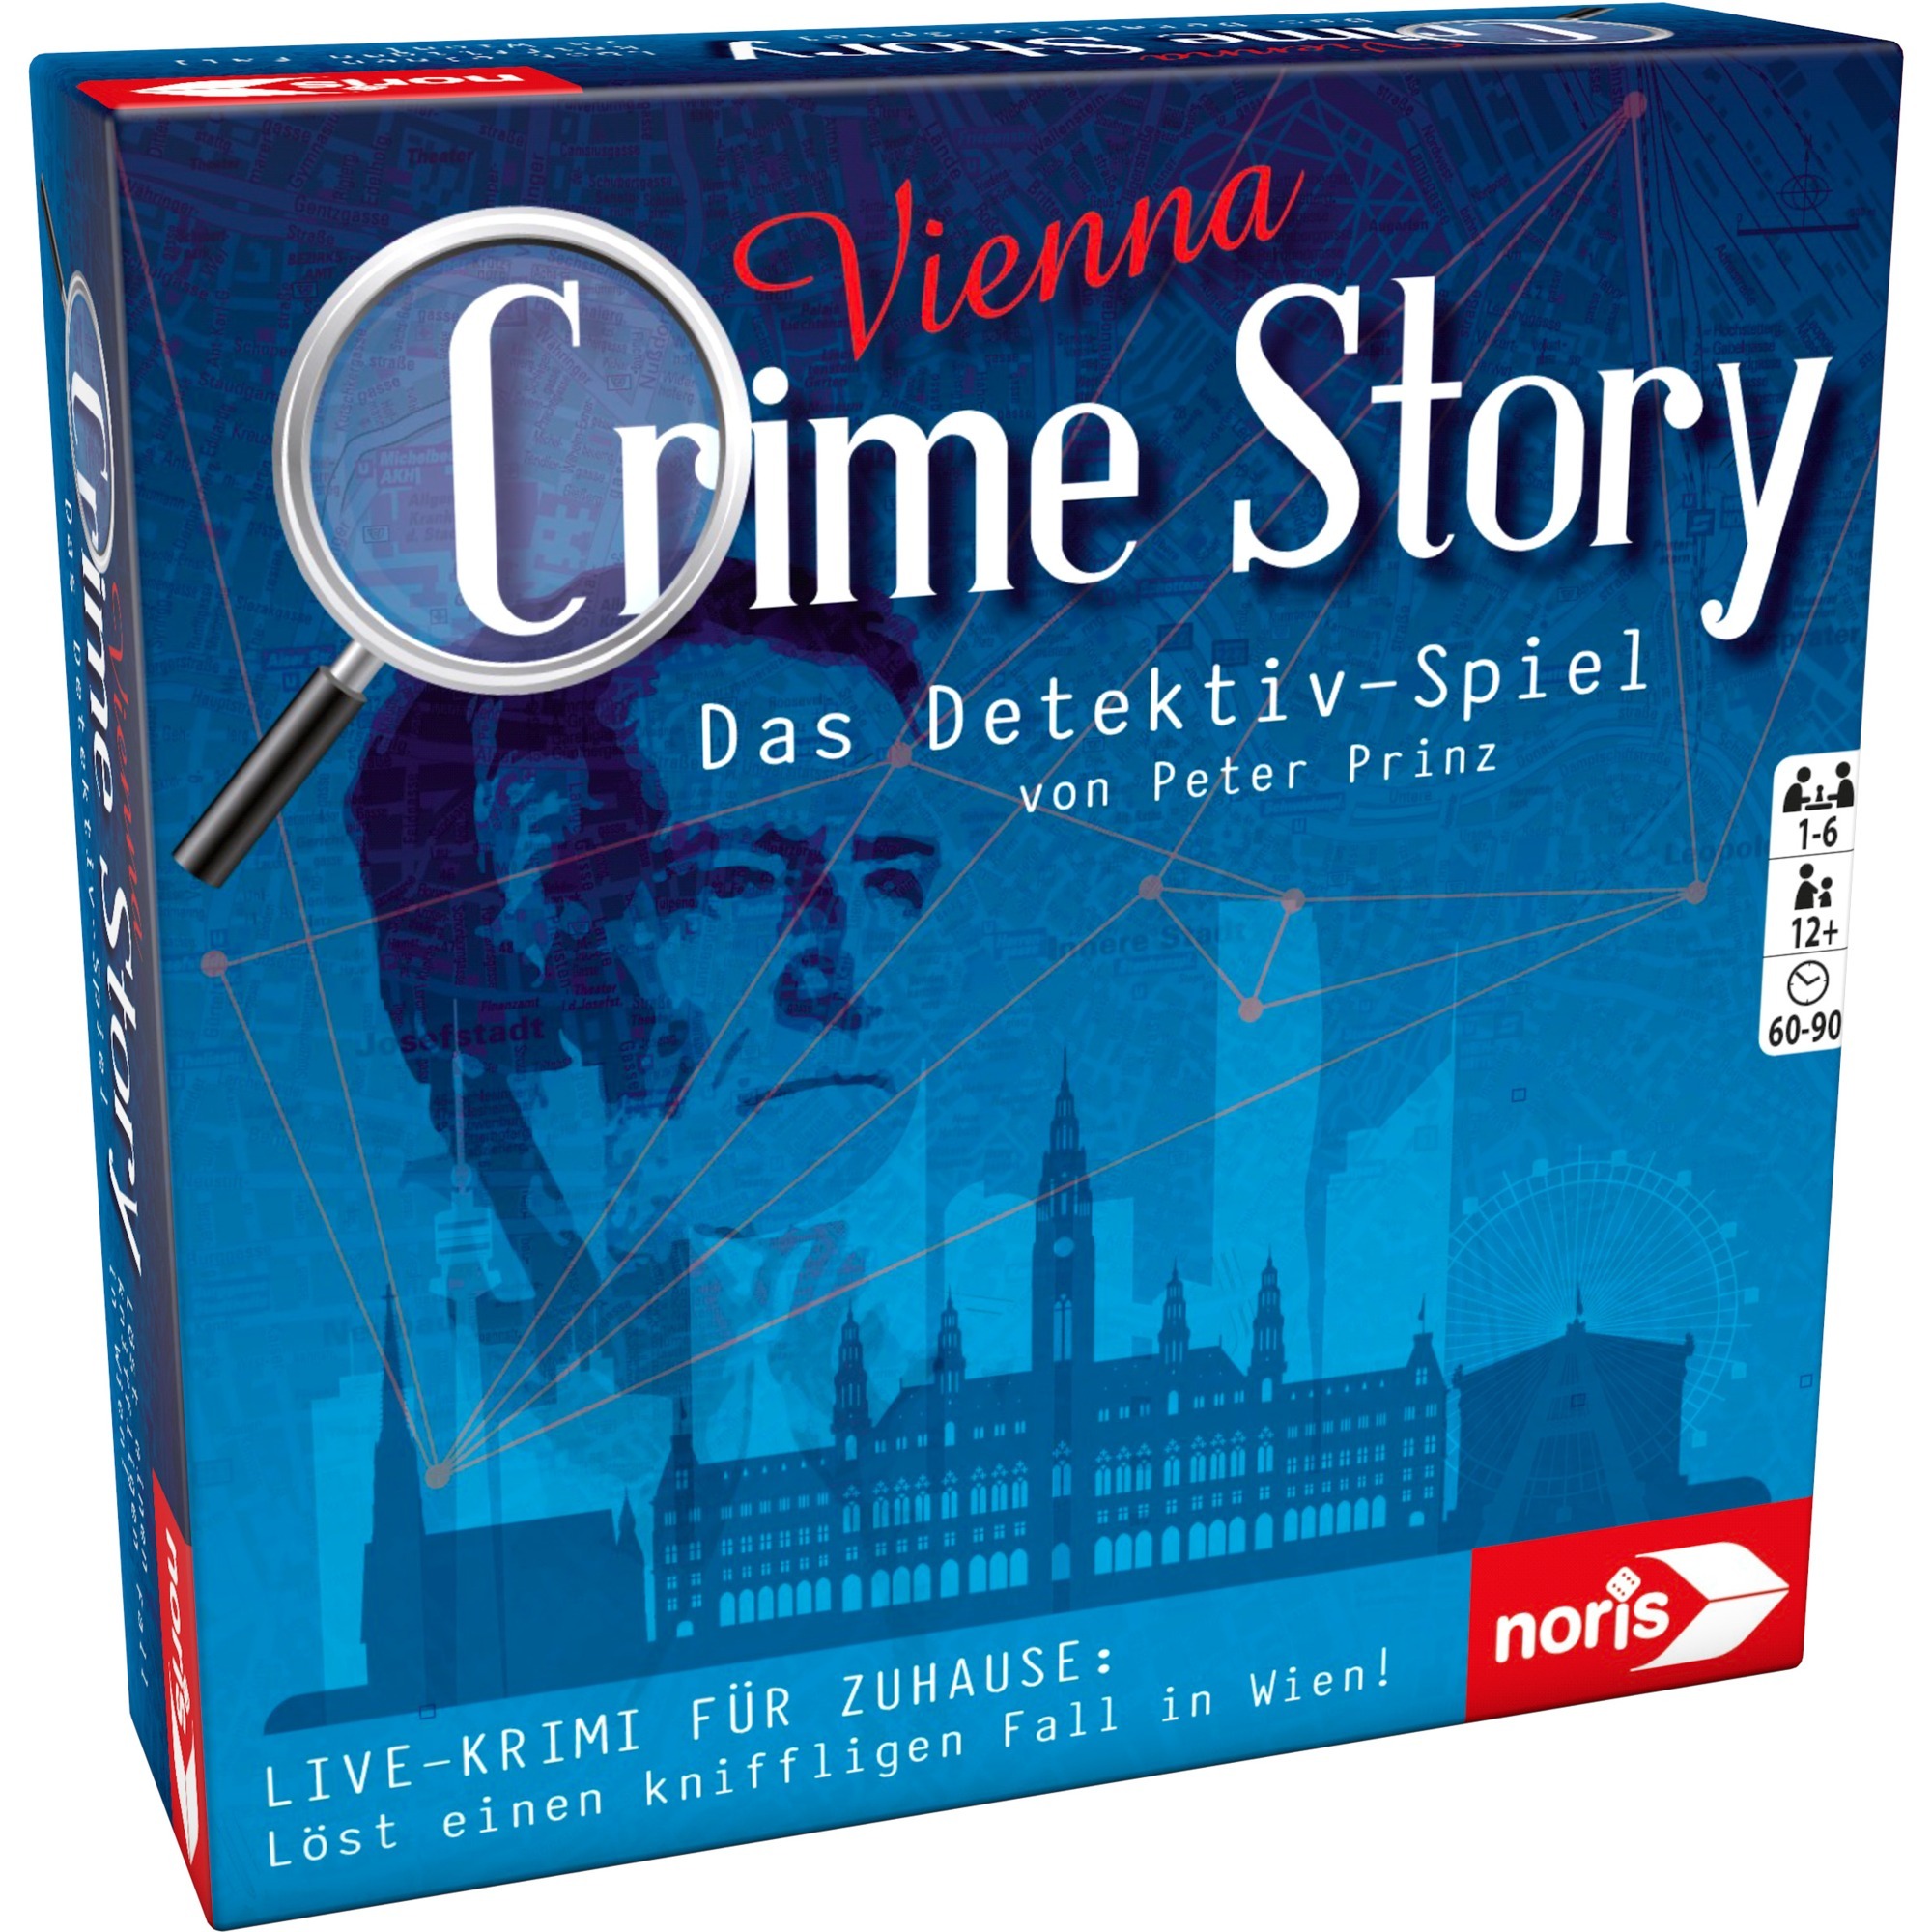 Image of Alternate - Crime Story - Vienna, Partyspiel online einkaufen bei Alternate